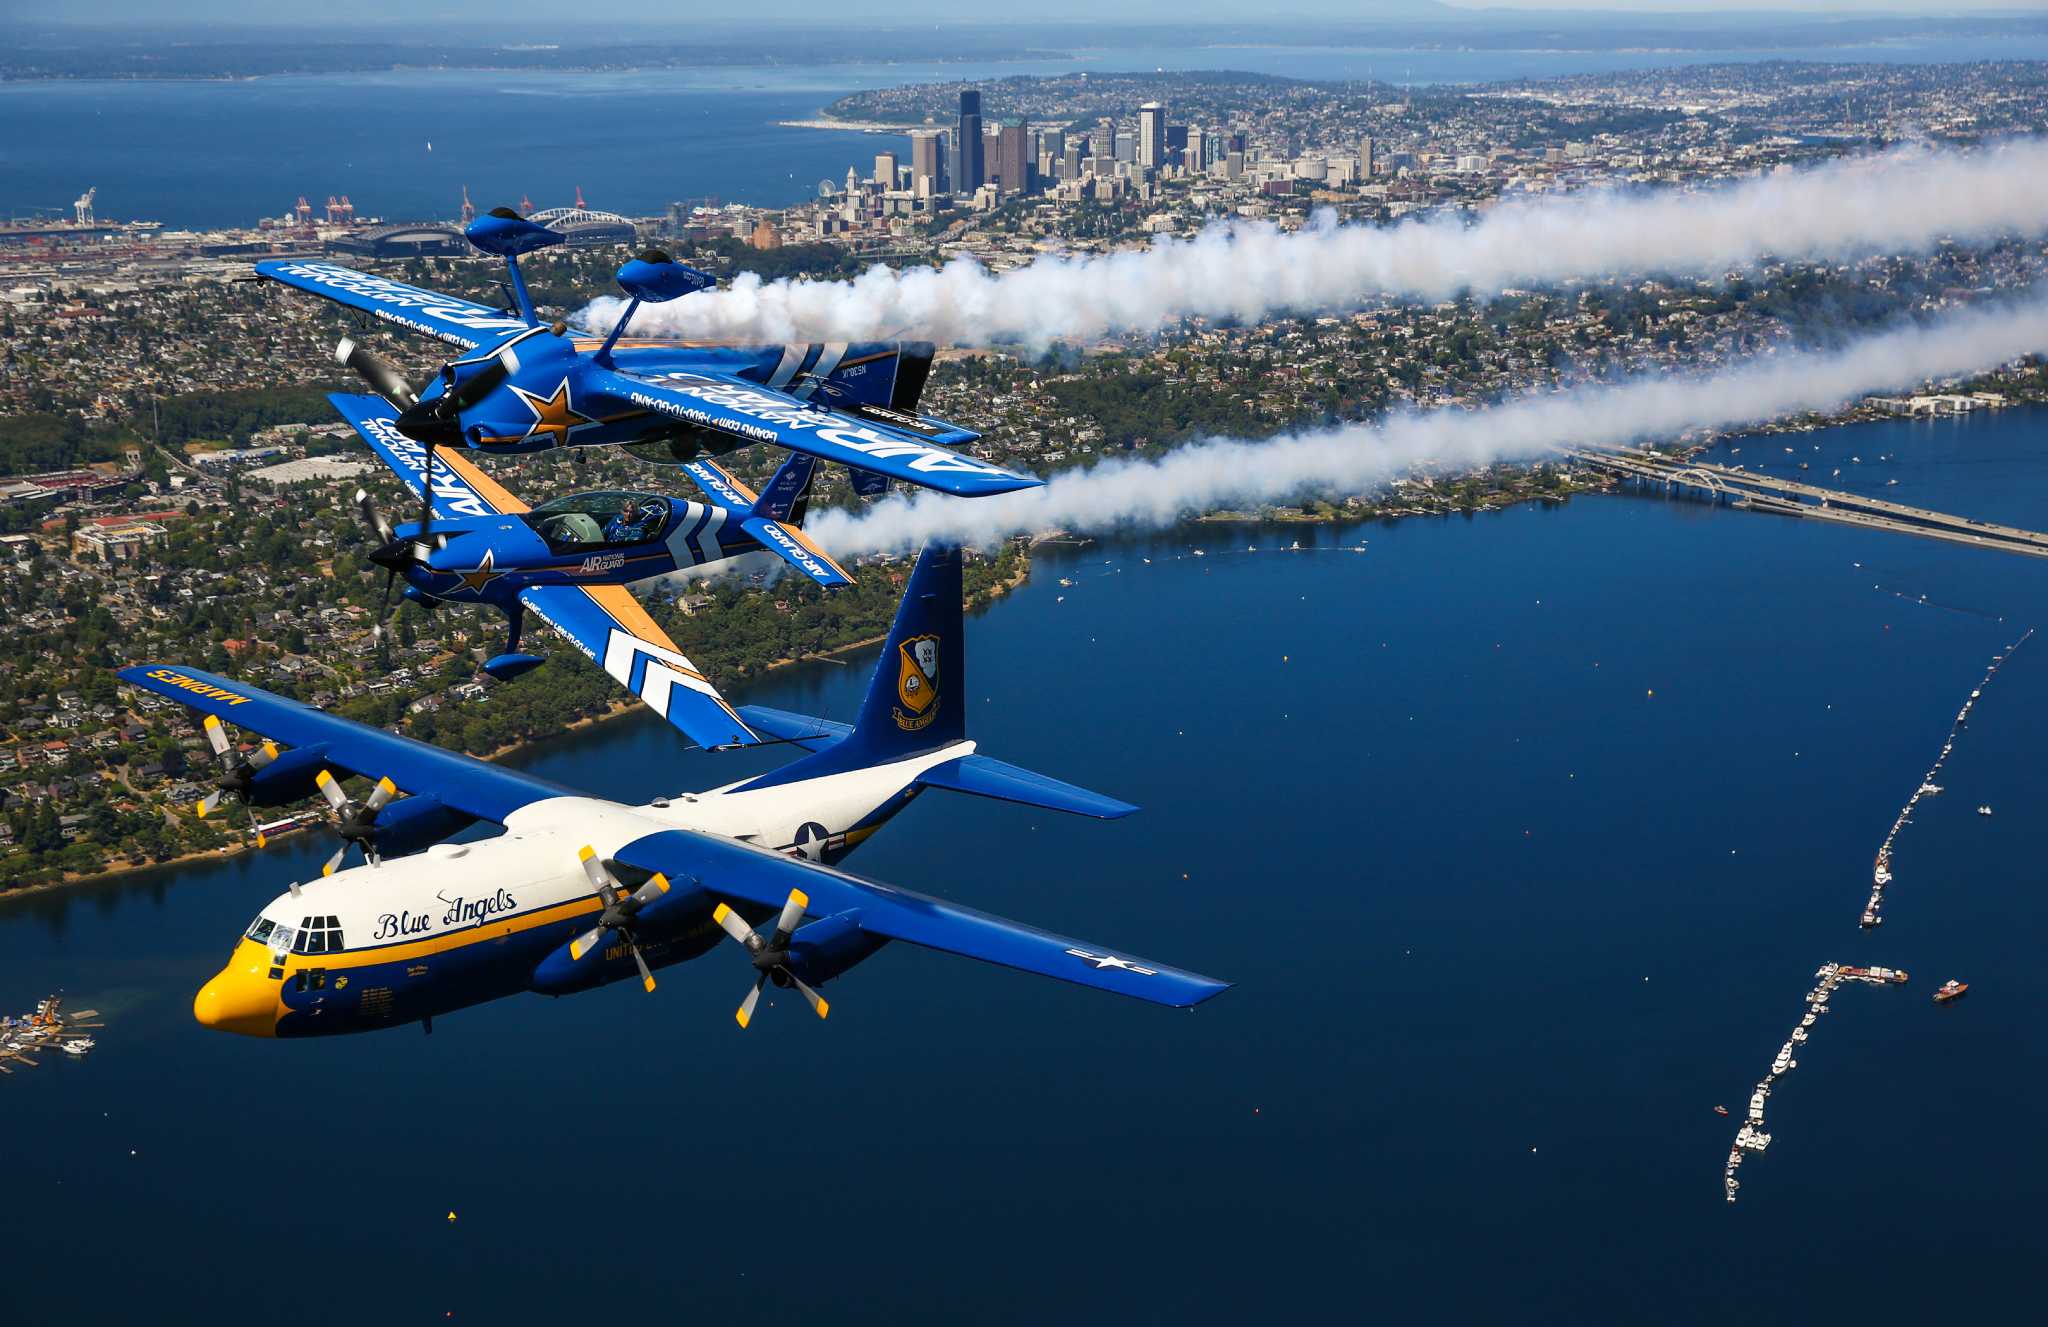 Seafair airplanes, Blue Angels take to Seattle skies